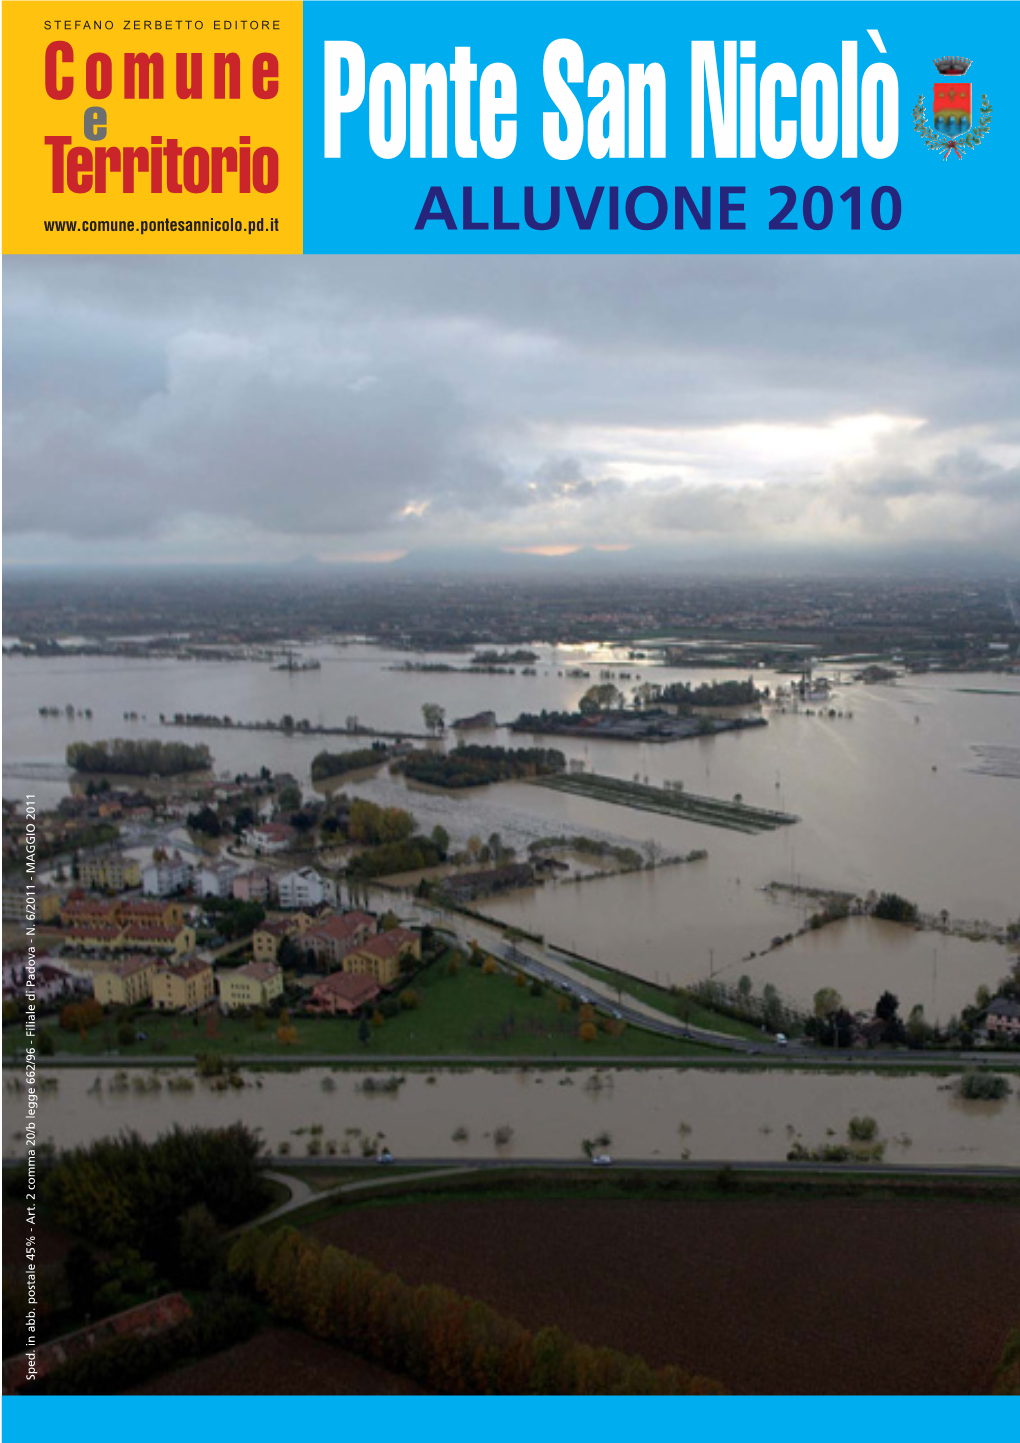 Speciale Alluvione 2010